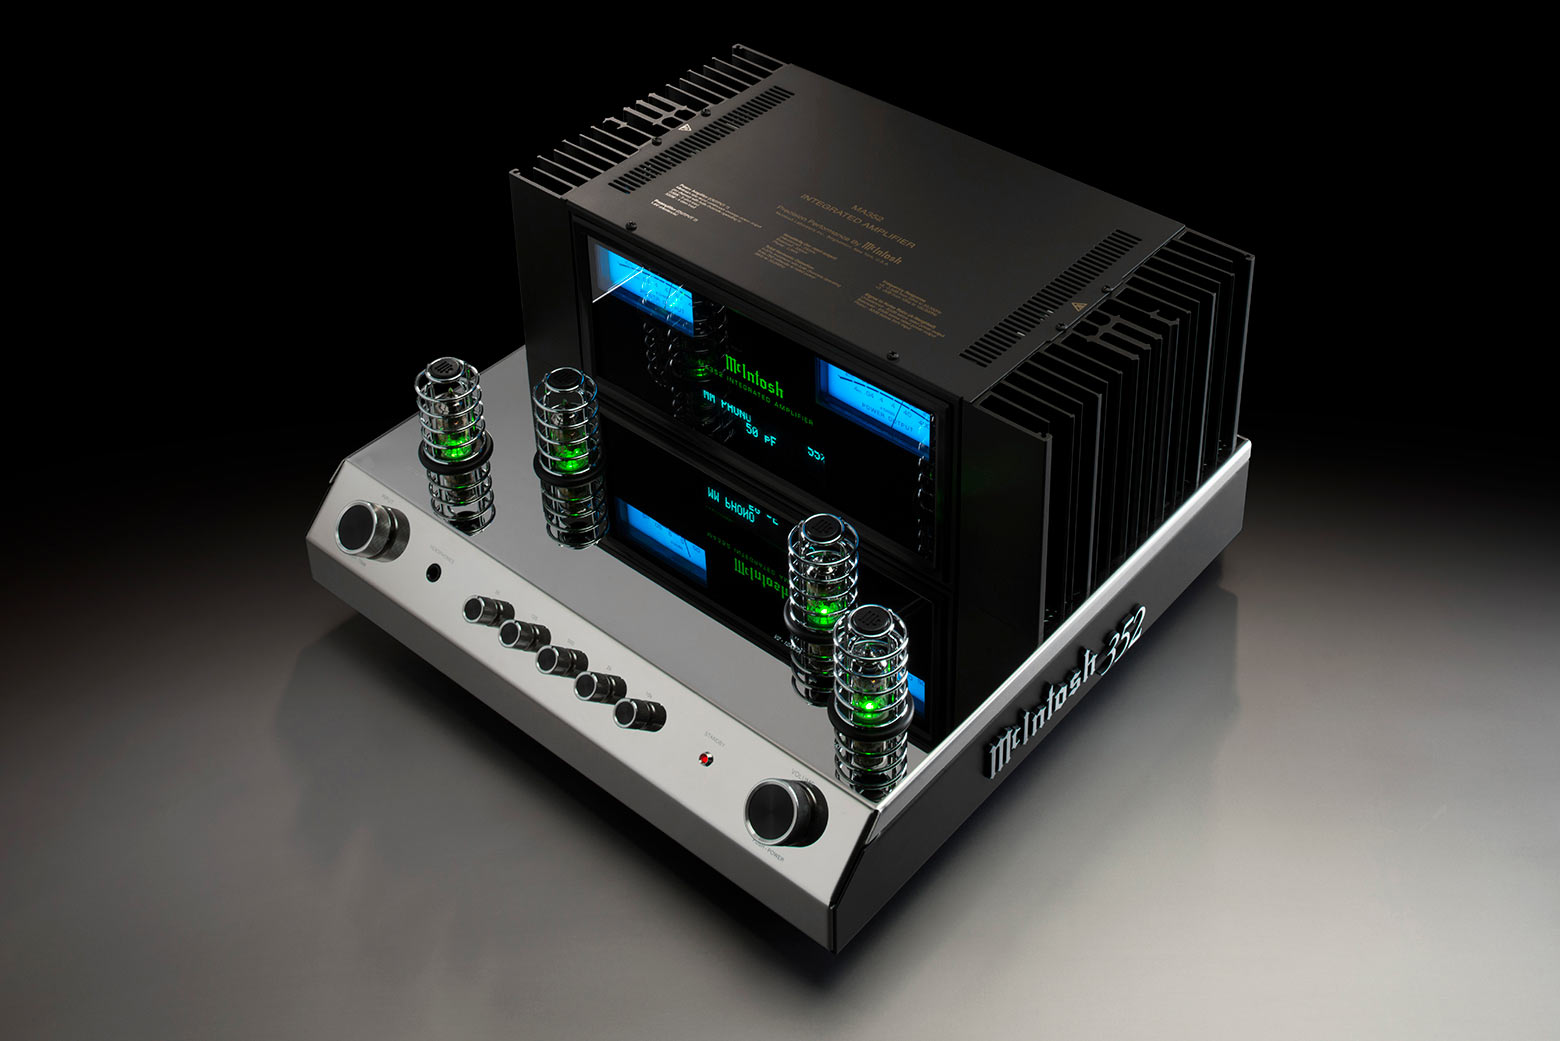 McIntosh MA352 Integrated Amplifier